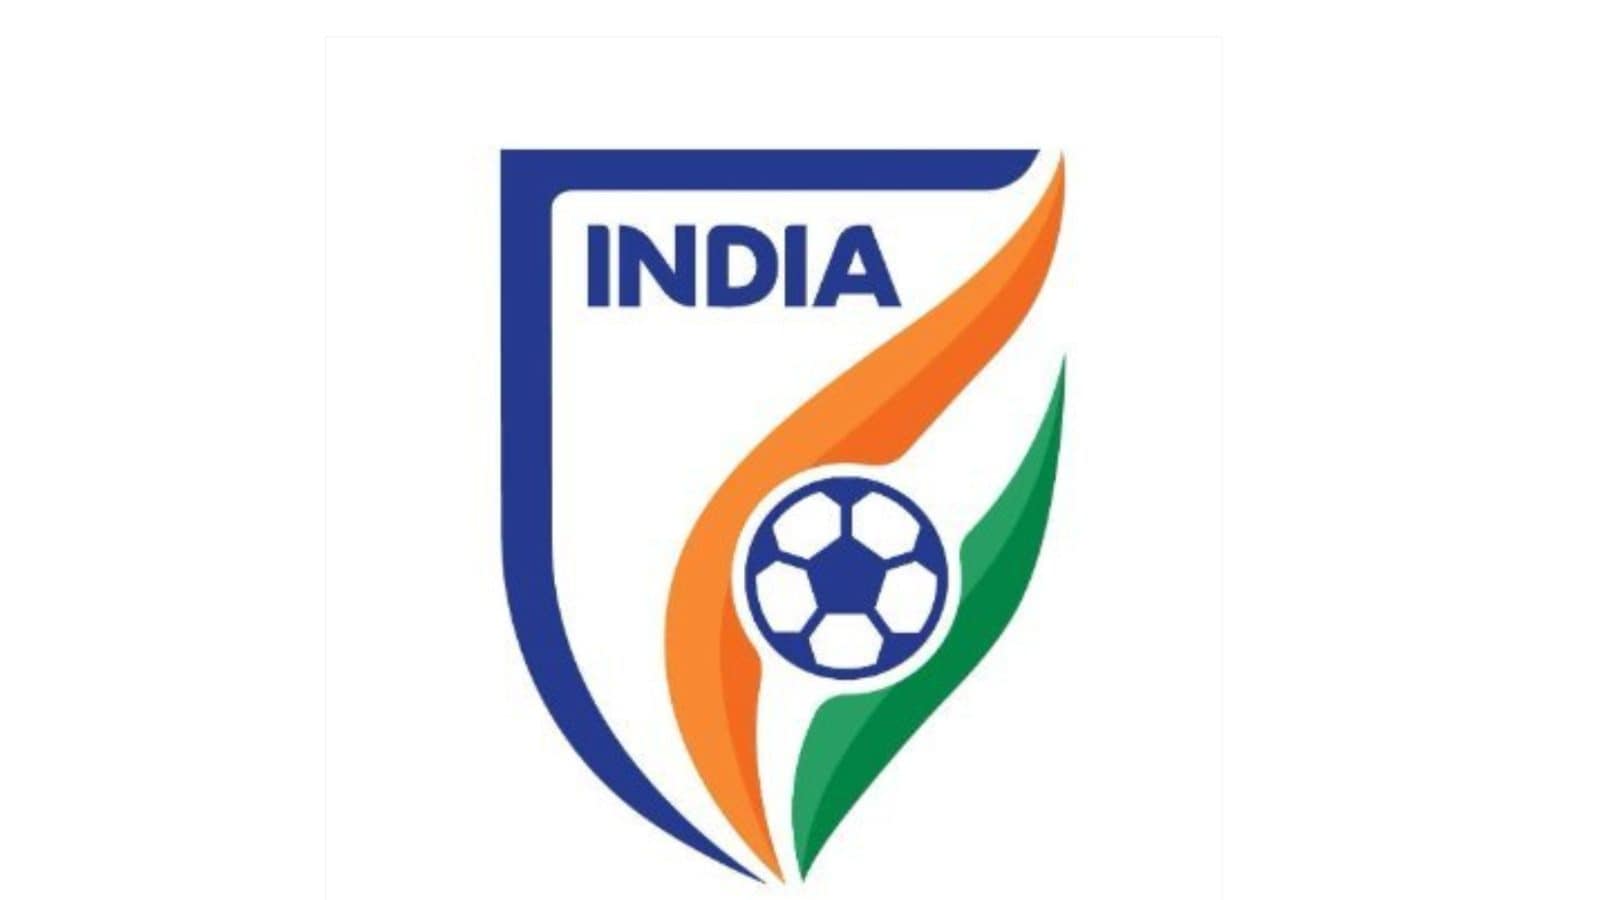 India sube dos puestos hasta el puesto 104 en el ranking de la FIFA